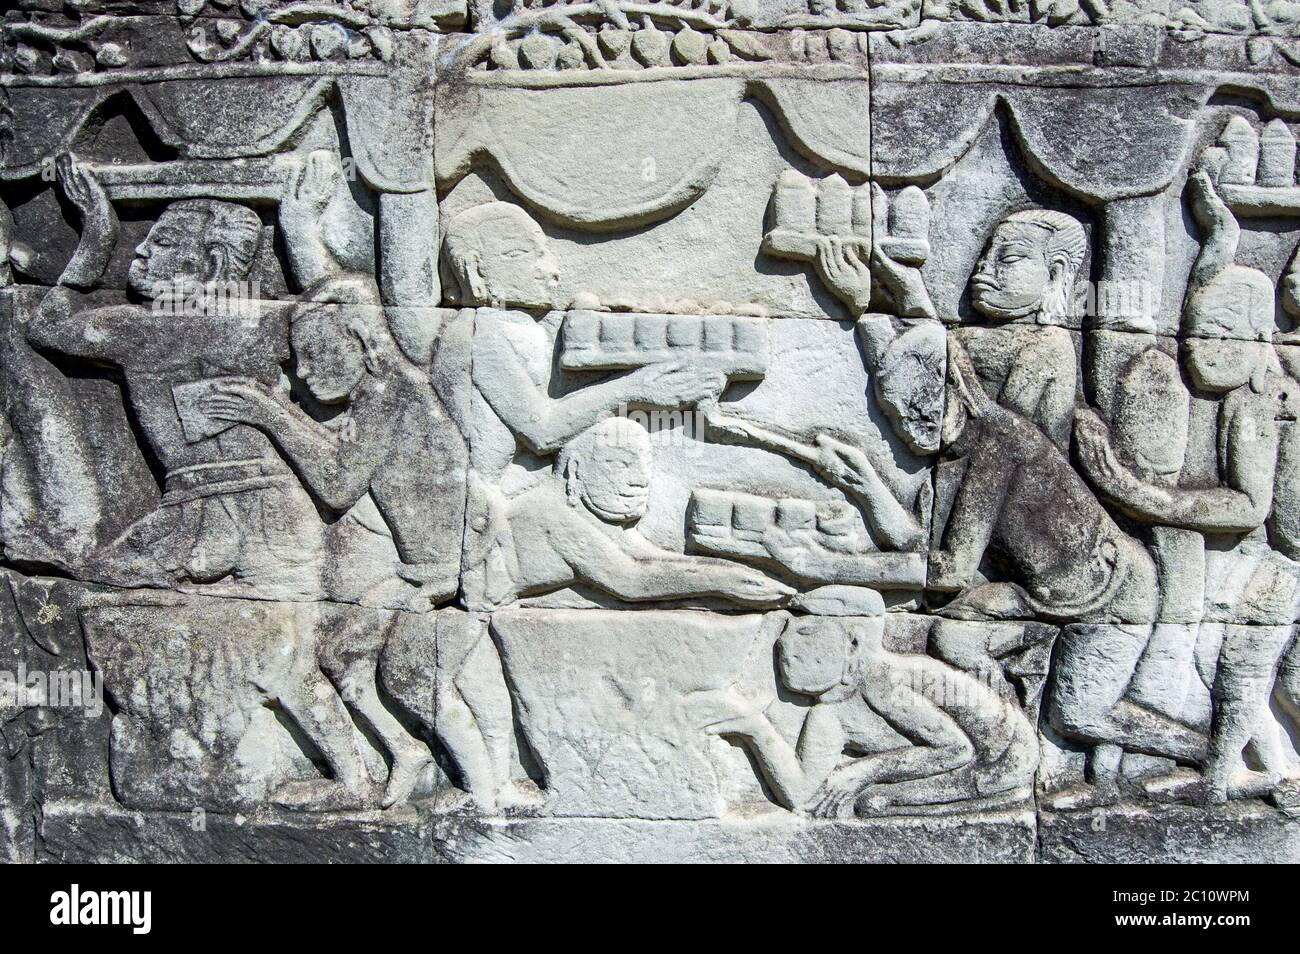 Antica scultura Khmer che mostra vassoi di cibo e bevande che vengono portati a un banchetto. Muro del tempio di Bayon, Angkor Thom, Siem Reap, Cambogia. Foto Stock